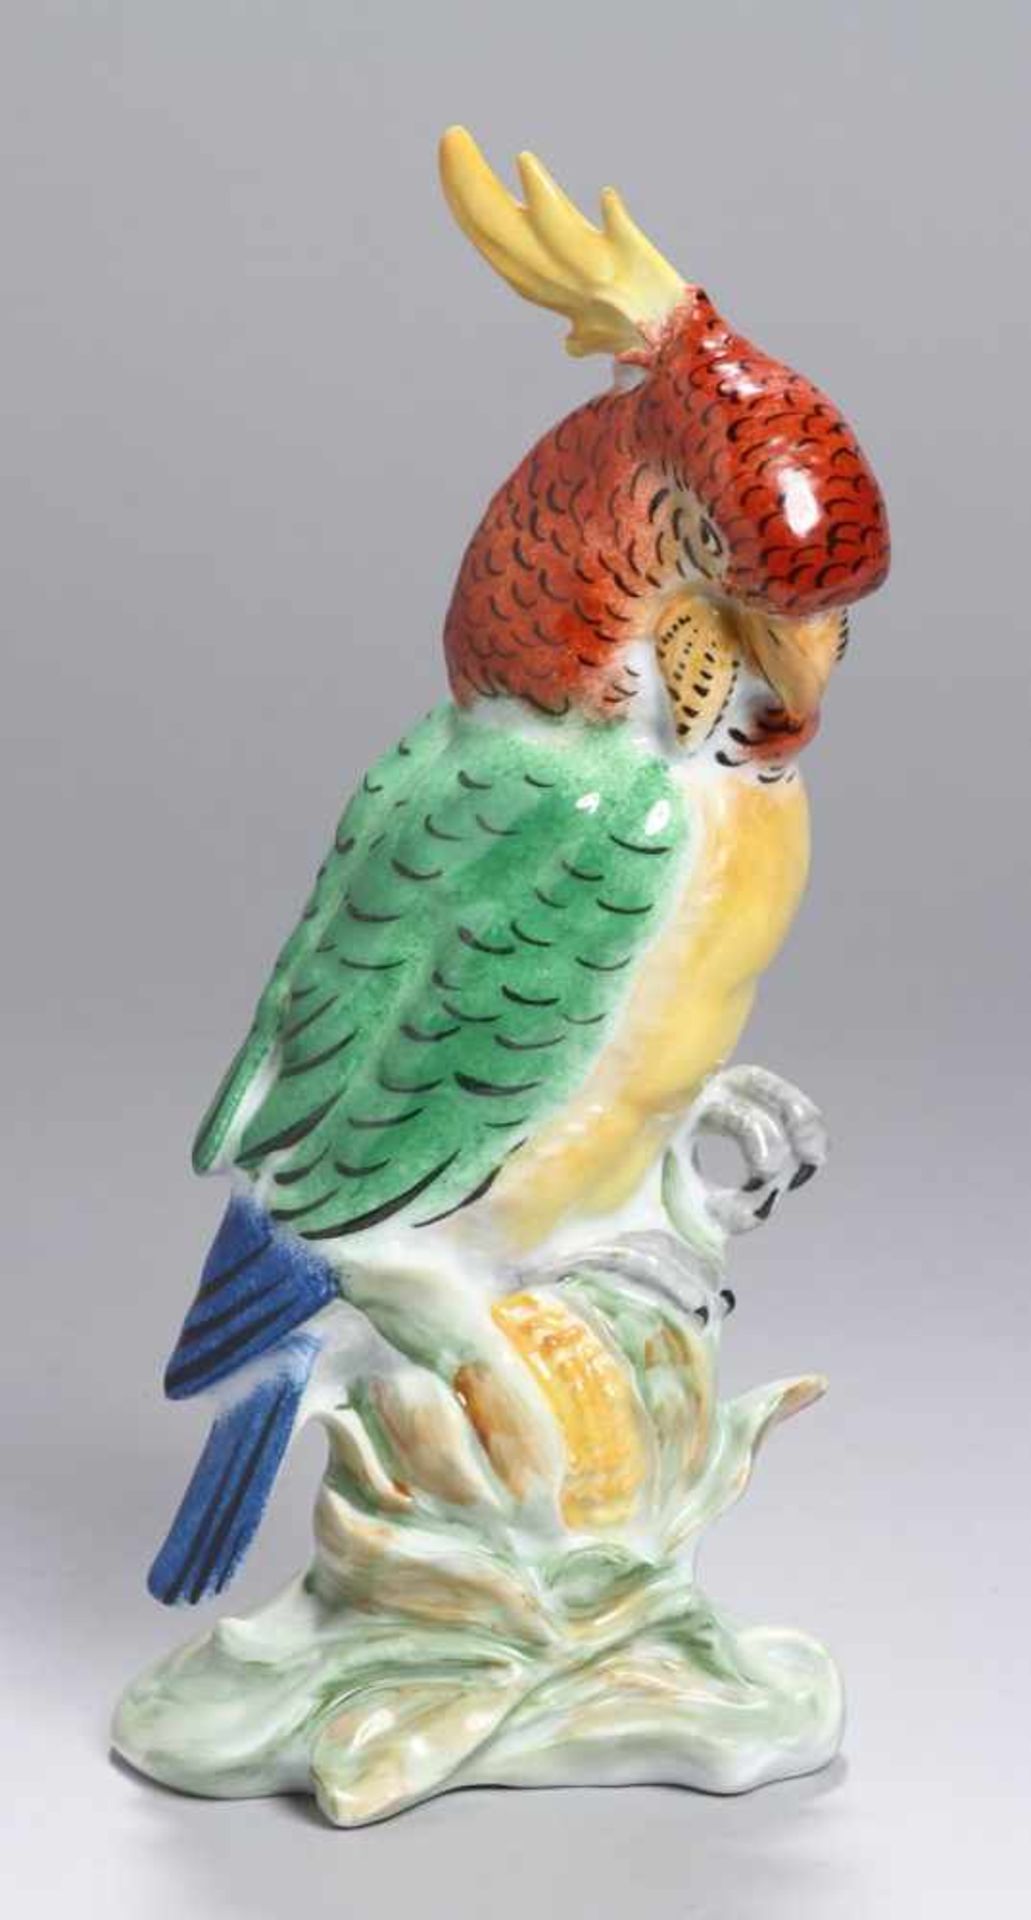 Porzellan-Tierplastik, "Kakadu", Vereinigte Zierporzellanwerke Lichte, um 1986-90,